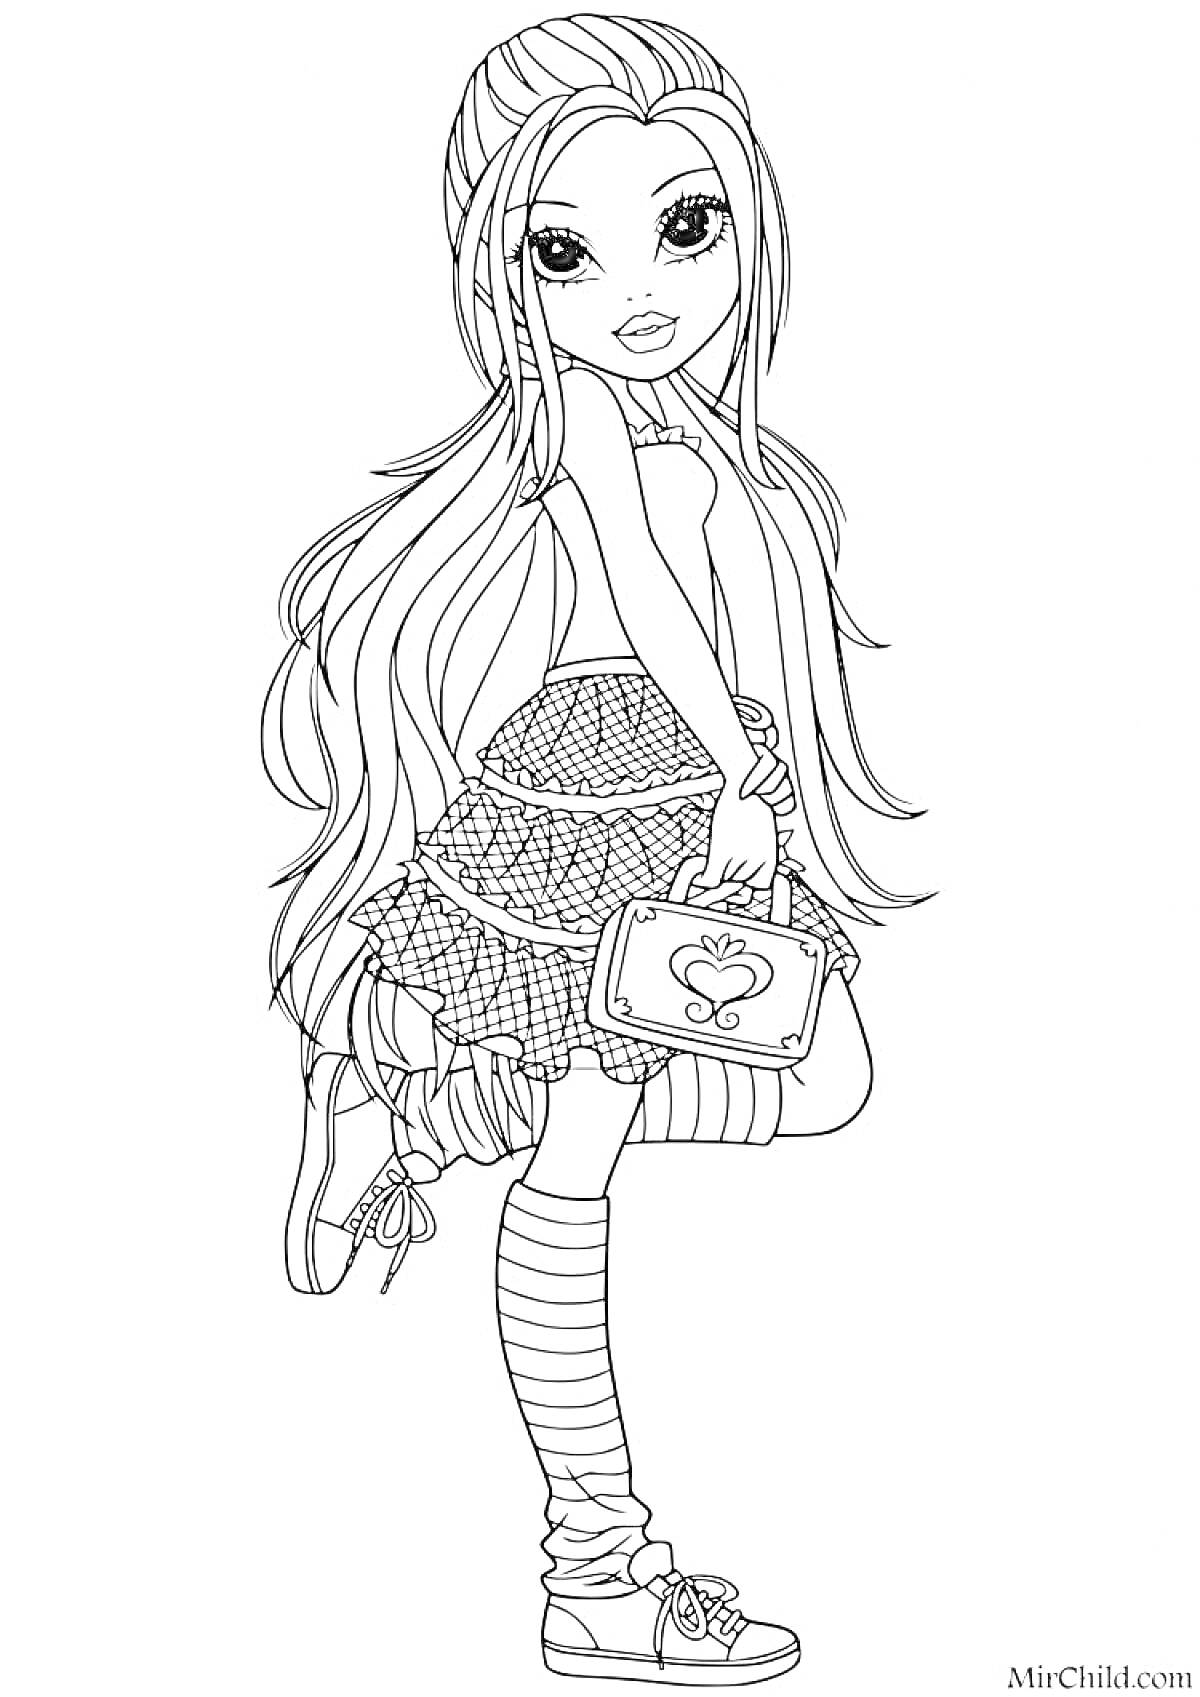 Раскраска Девочка с длинными волосами, юбкой и сумочкой